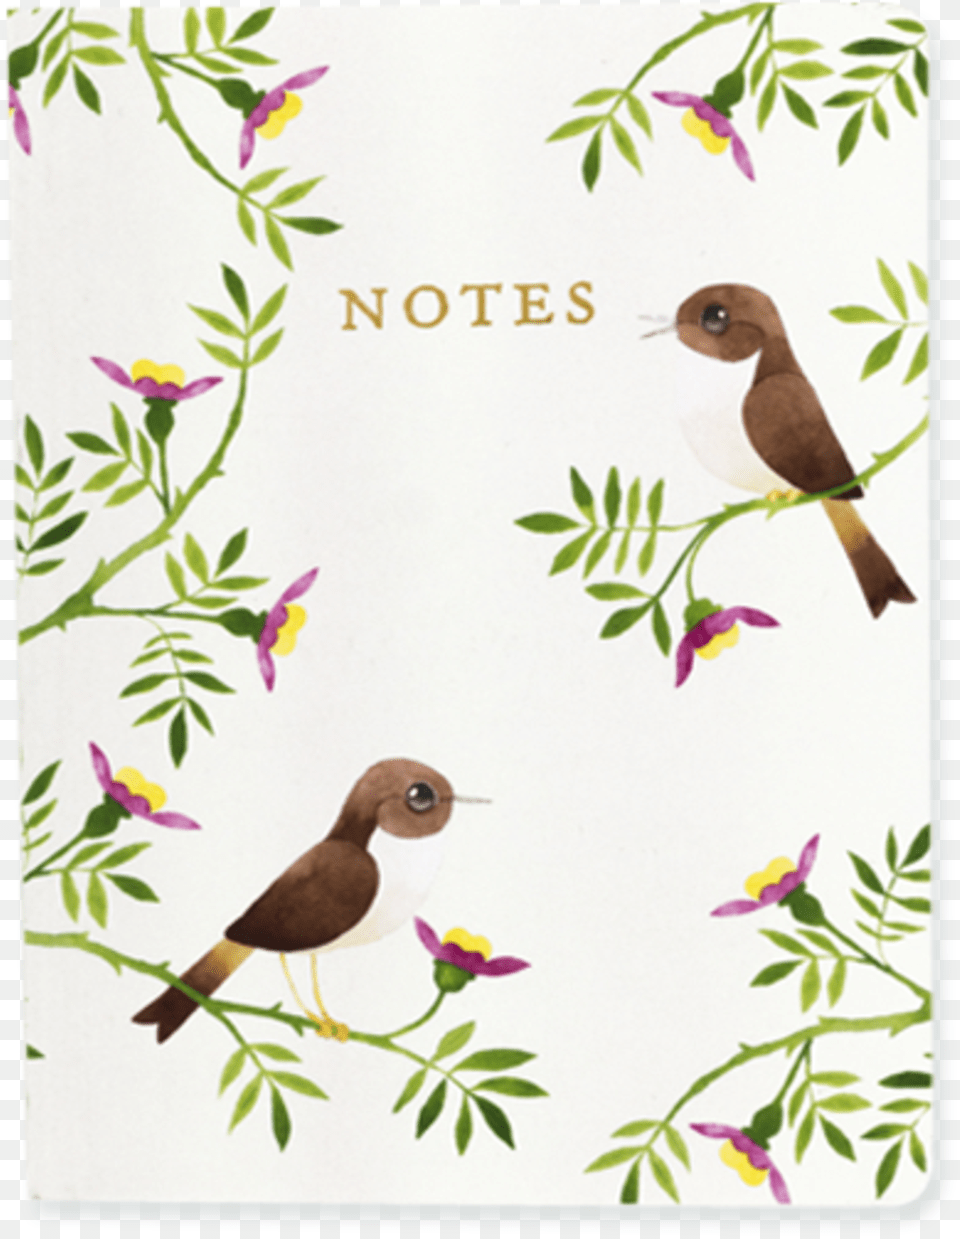 Matt Sewells Birds A6 Notebook Finch, Animal, Bird, Plant, Art Free Transparent Png